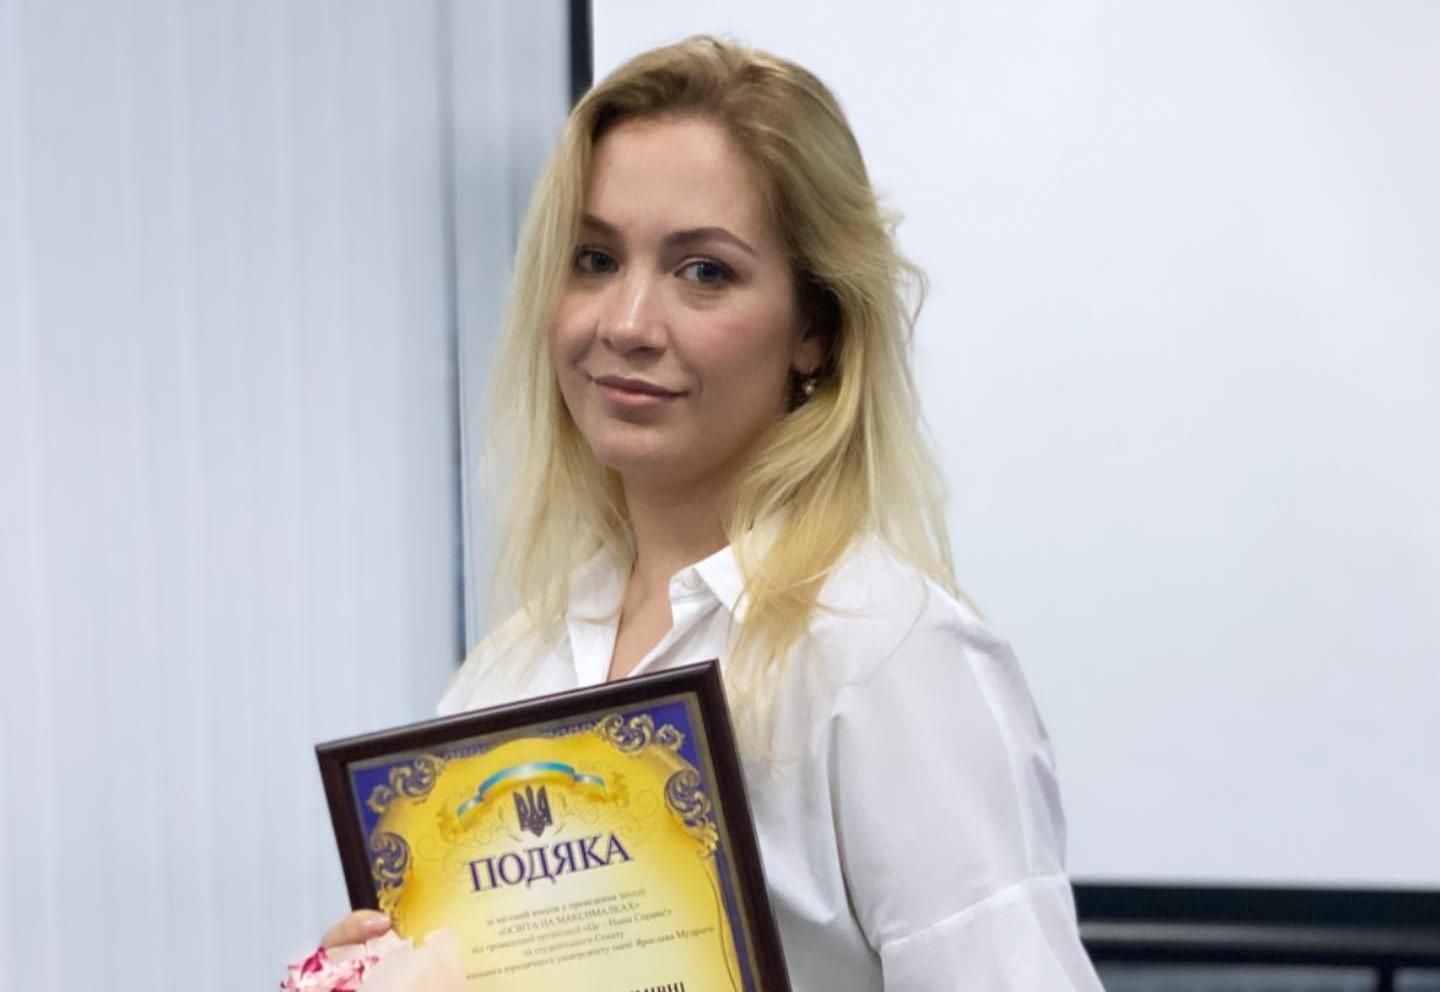 Харьковская преподавательница и жена прокурора призывает отдать Крым и Донбасс